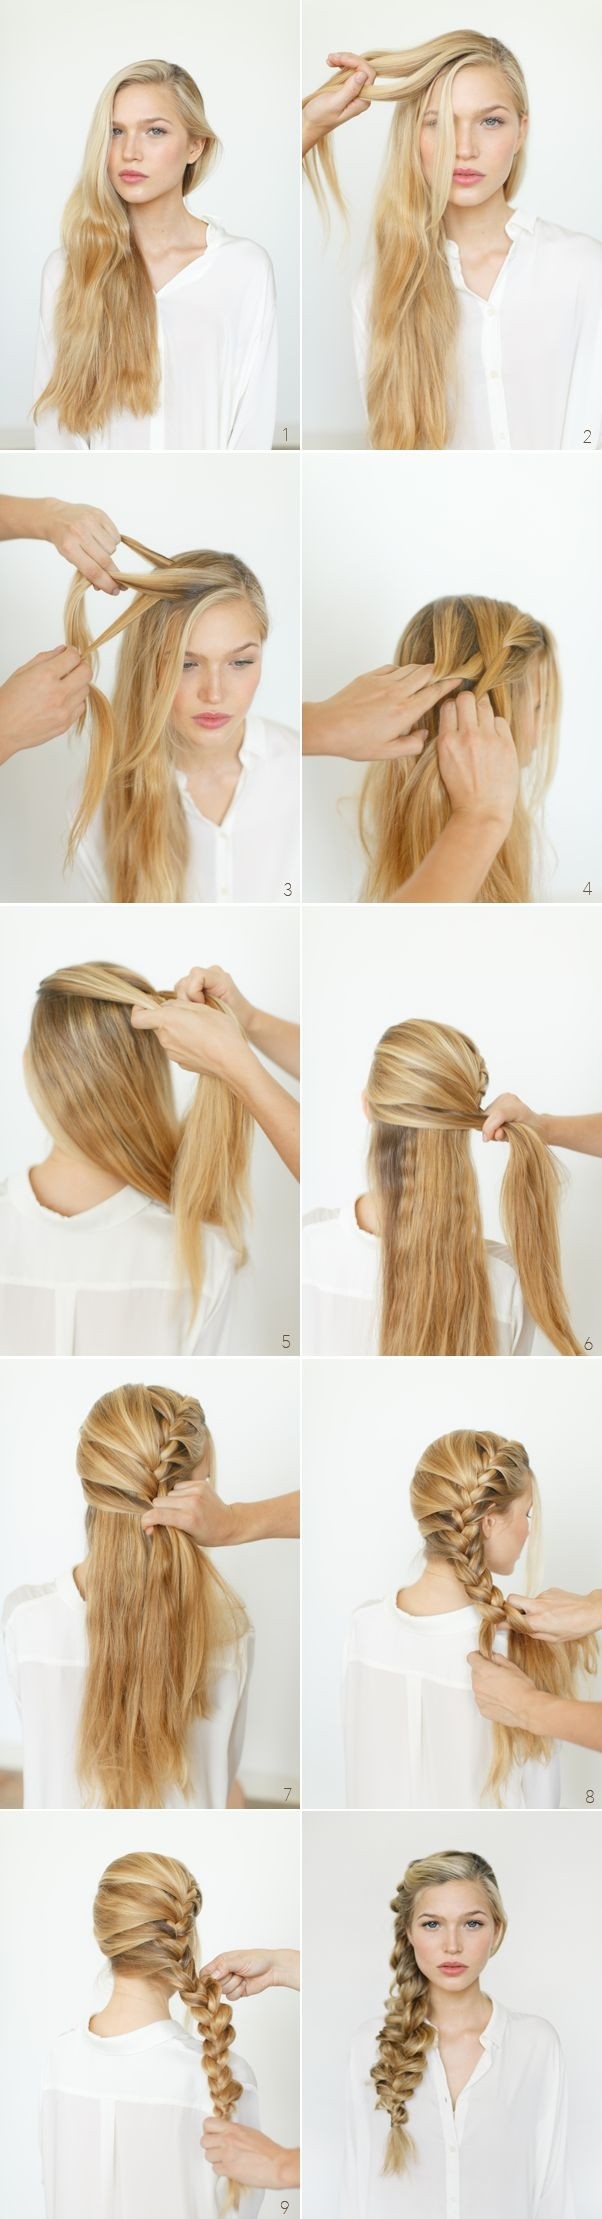 8 Cute Braided Hairstyles For Girls Long Hair Ideas